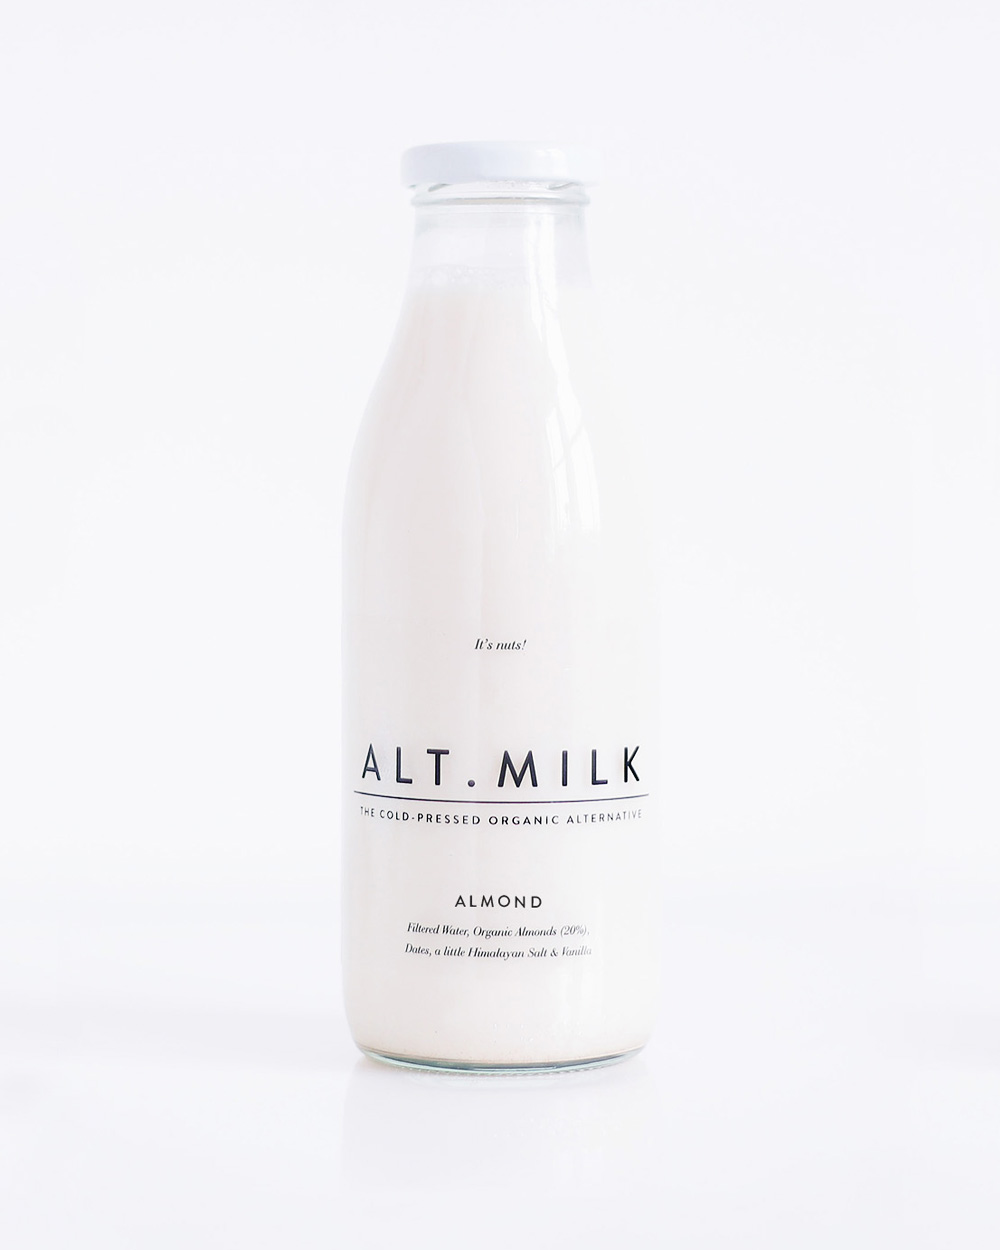 almond-milk-bottle-product- 